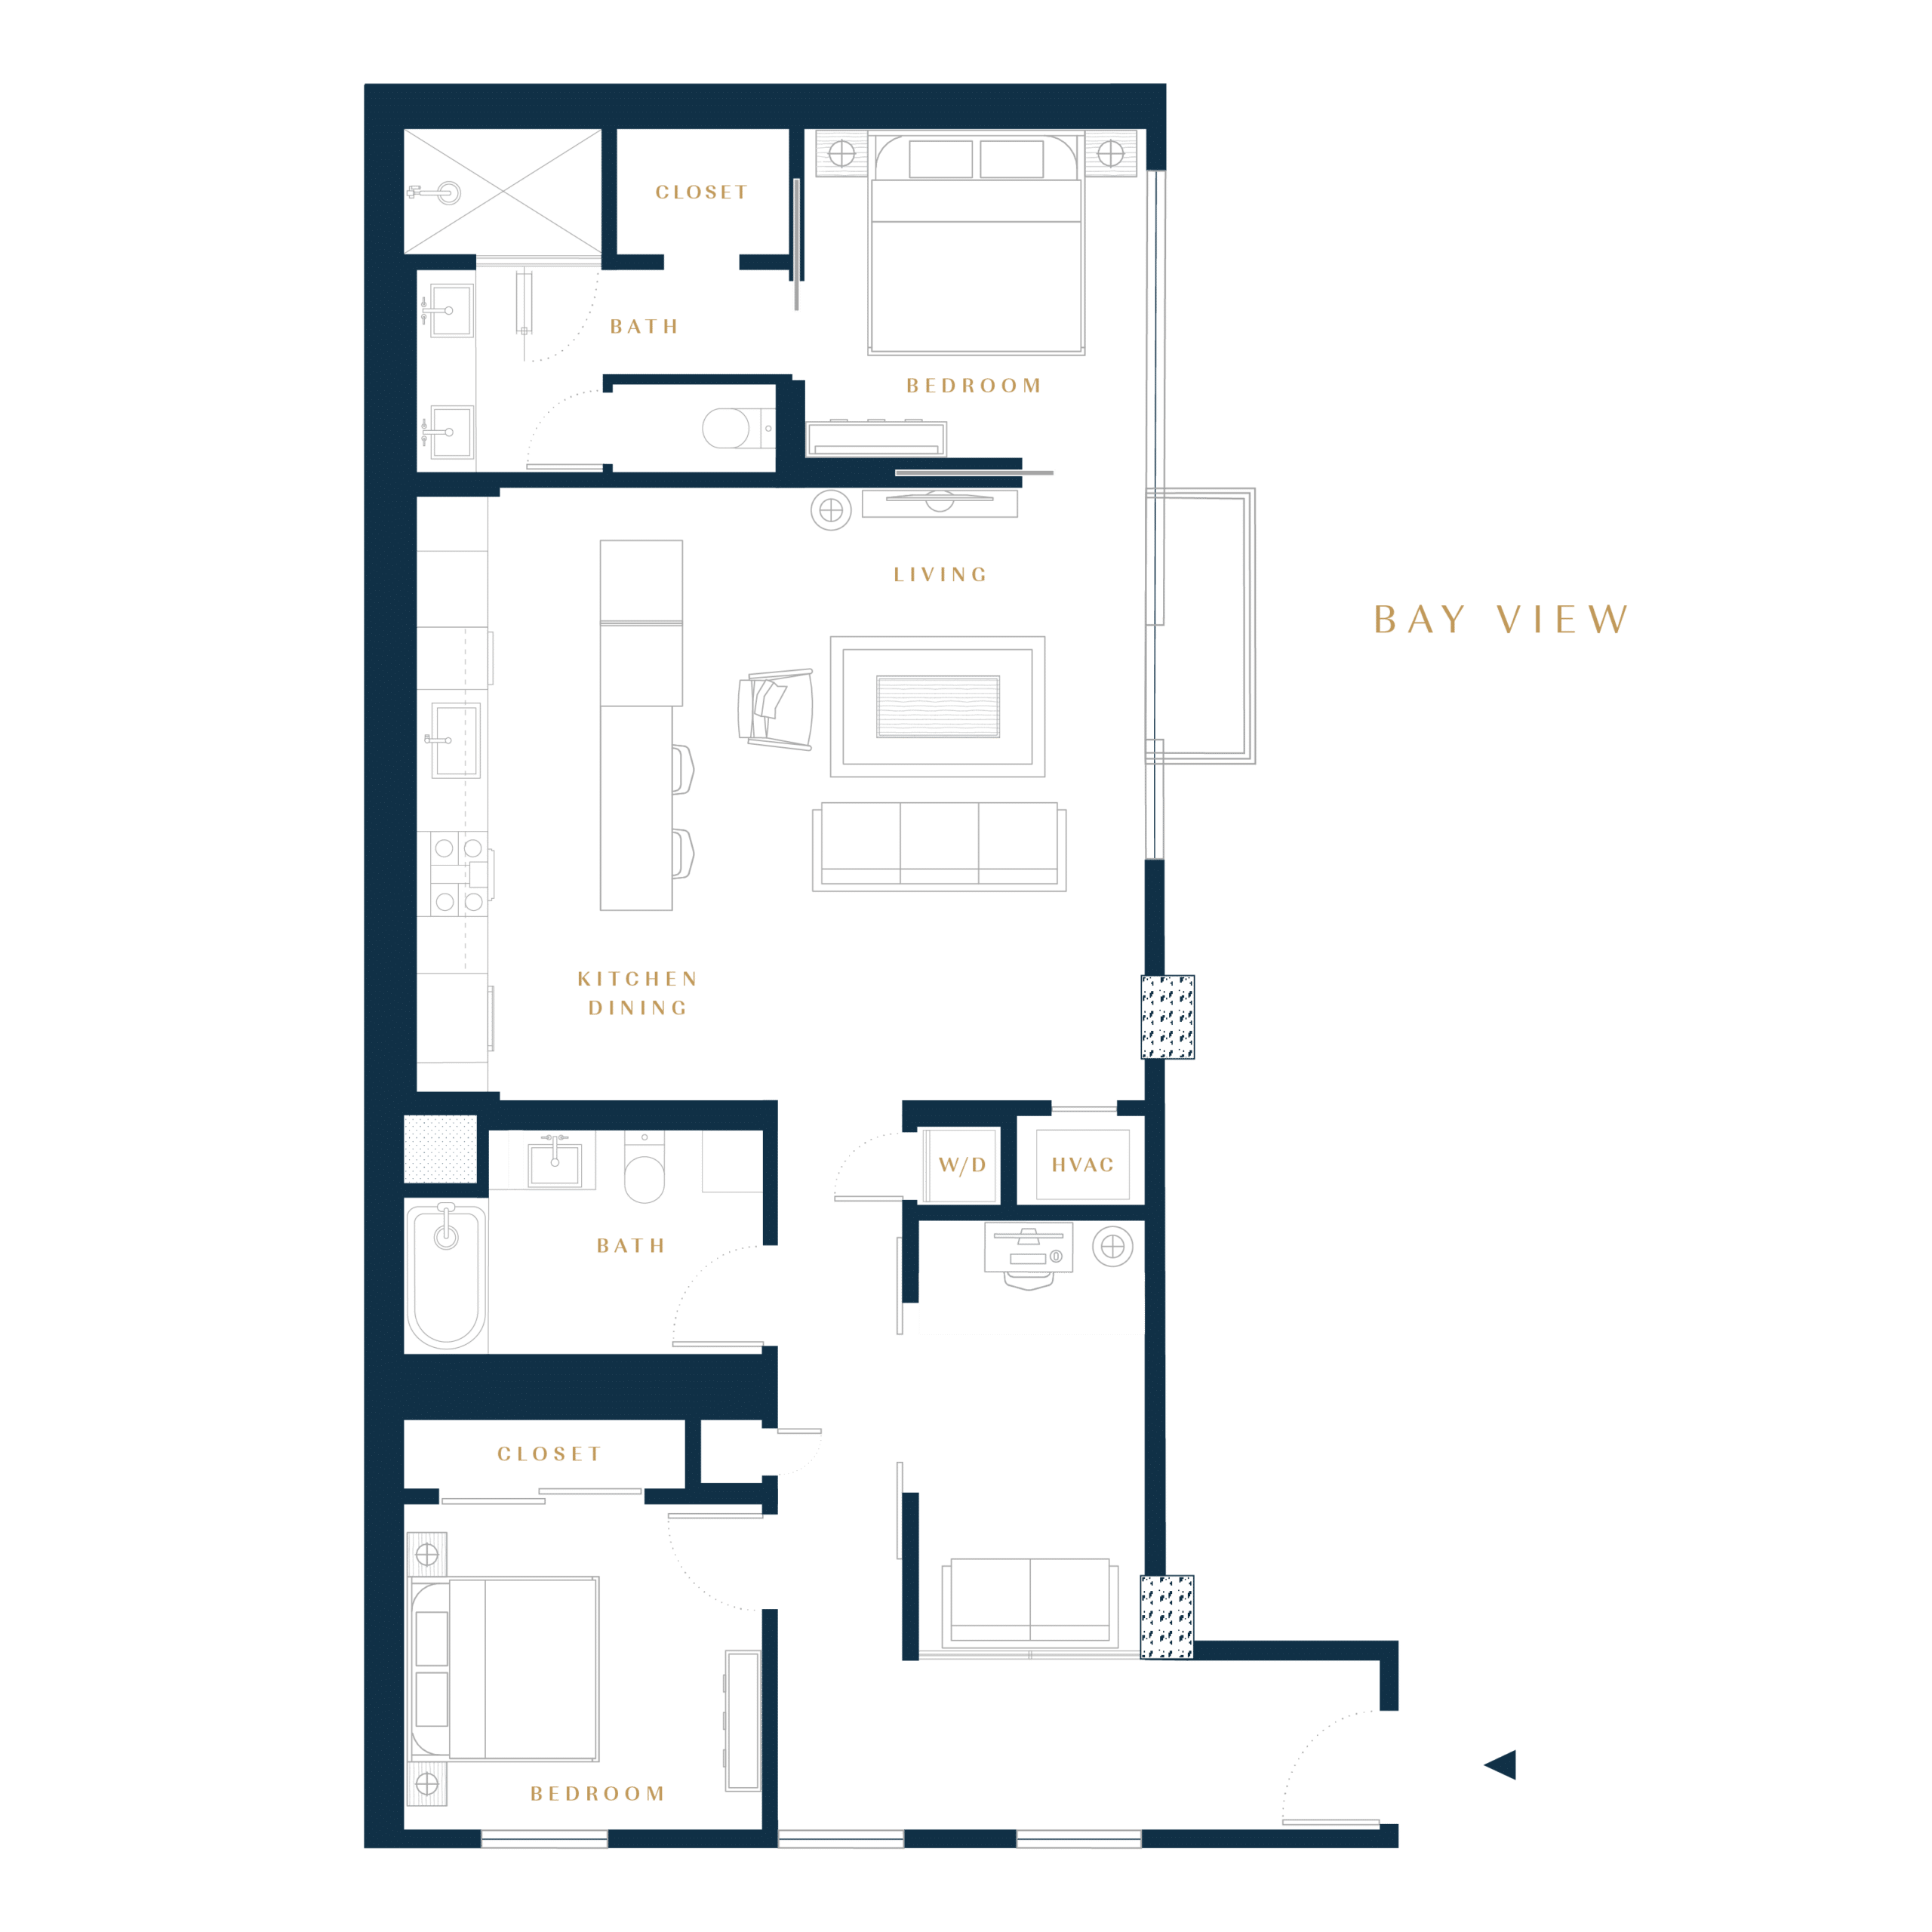 Residence 2A condo floor plan in San Francisco